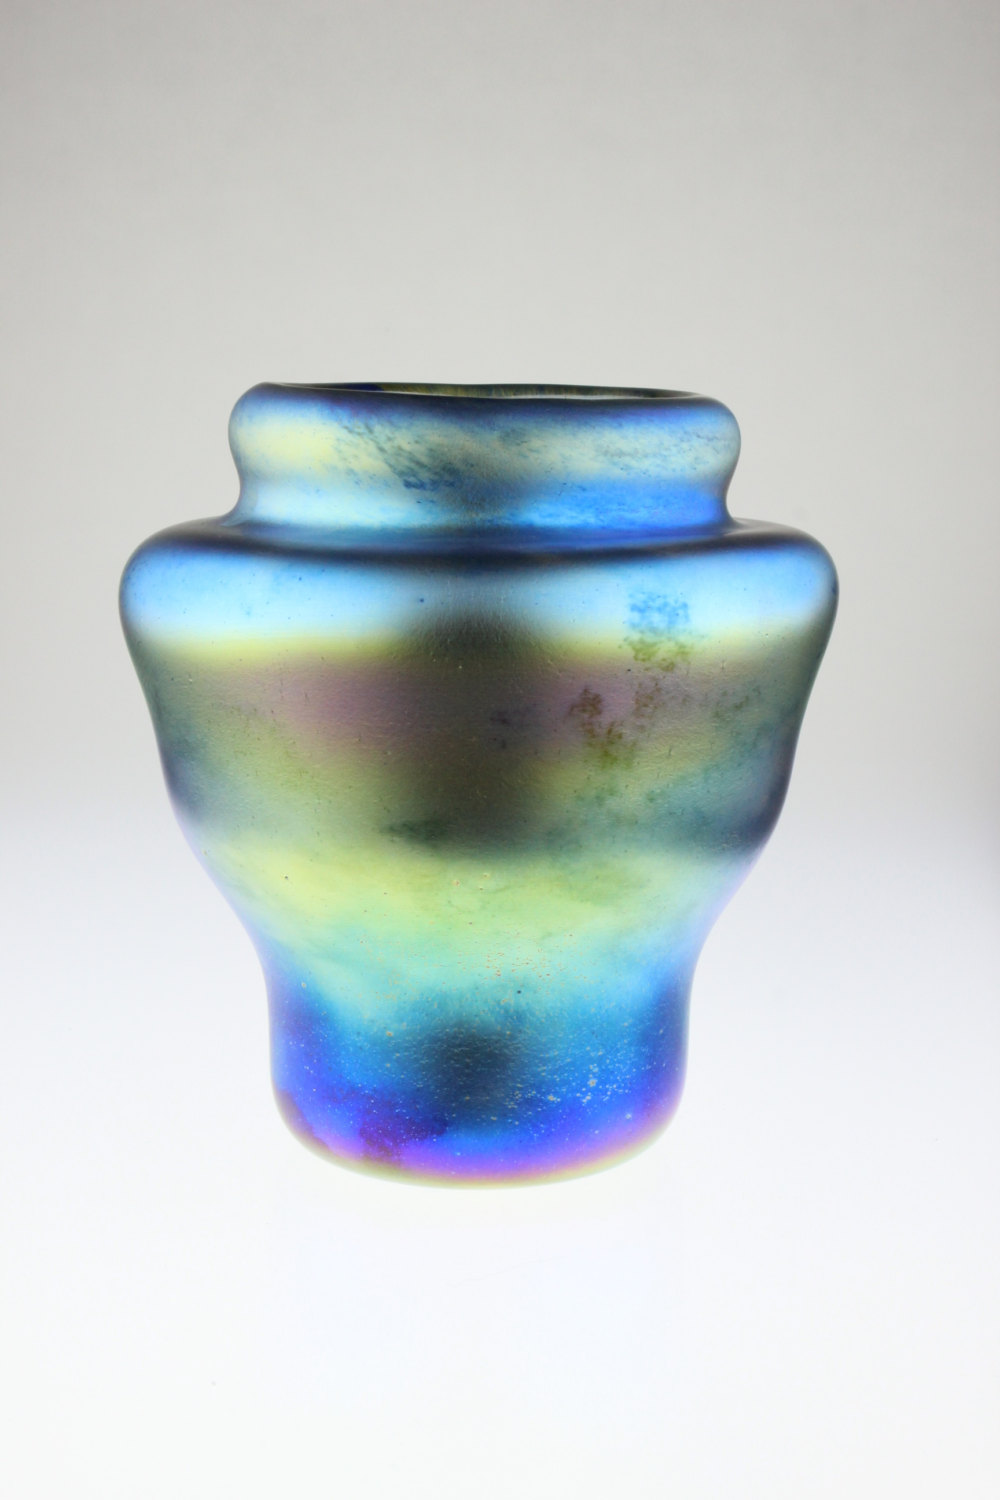 Iridescent glass vase by Eric W. Hansen